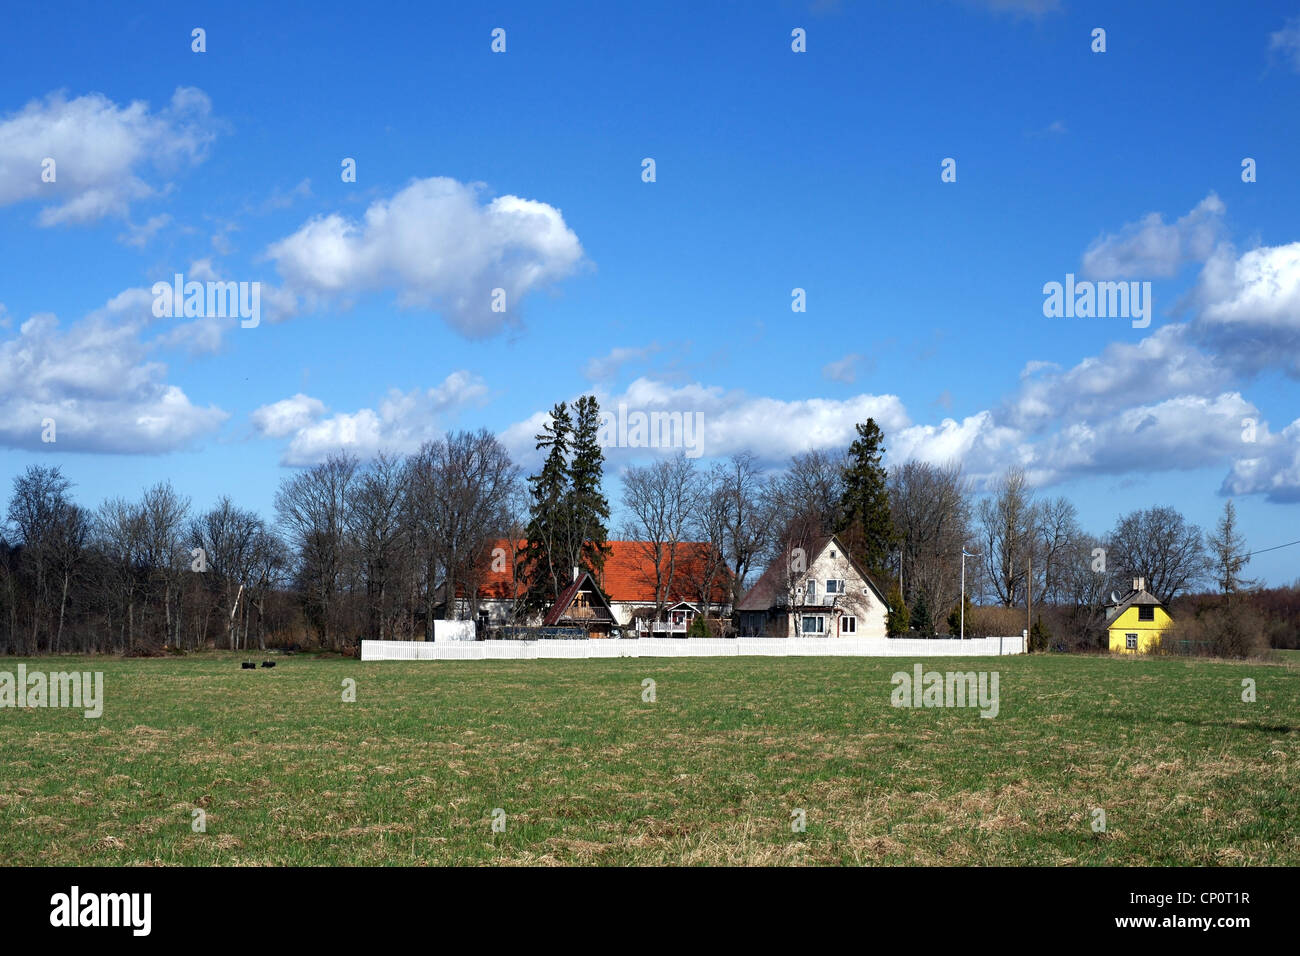 Landhaus auf dem Hintergrund des blauen Himmels und der Wolken Stockfoto